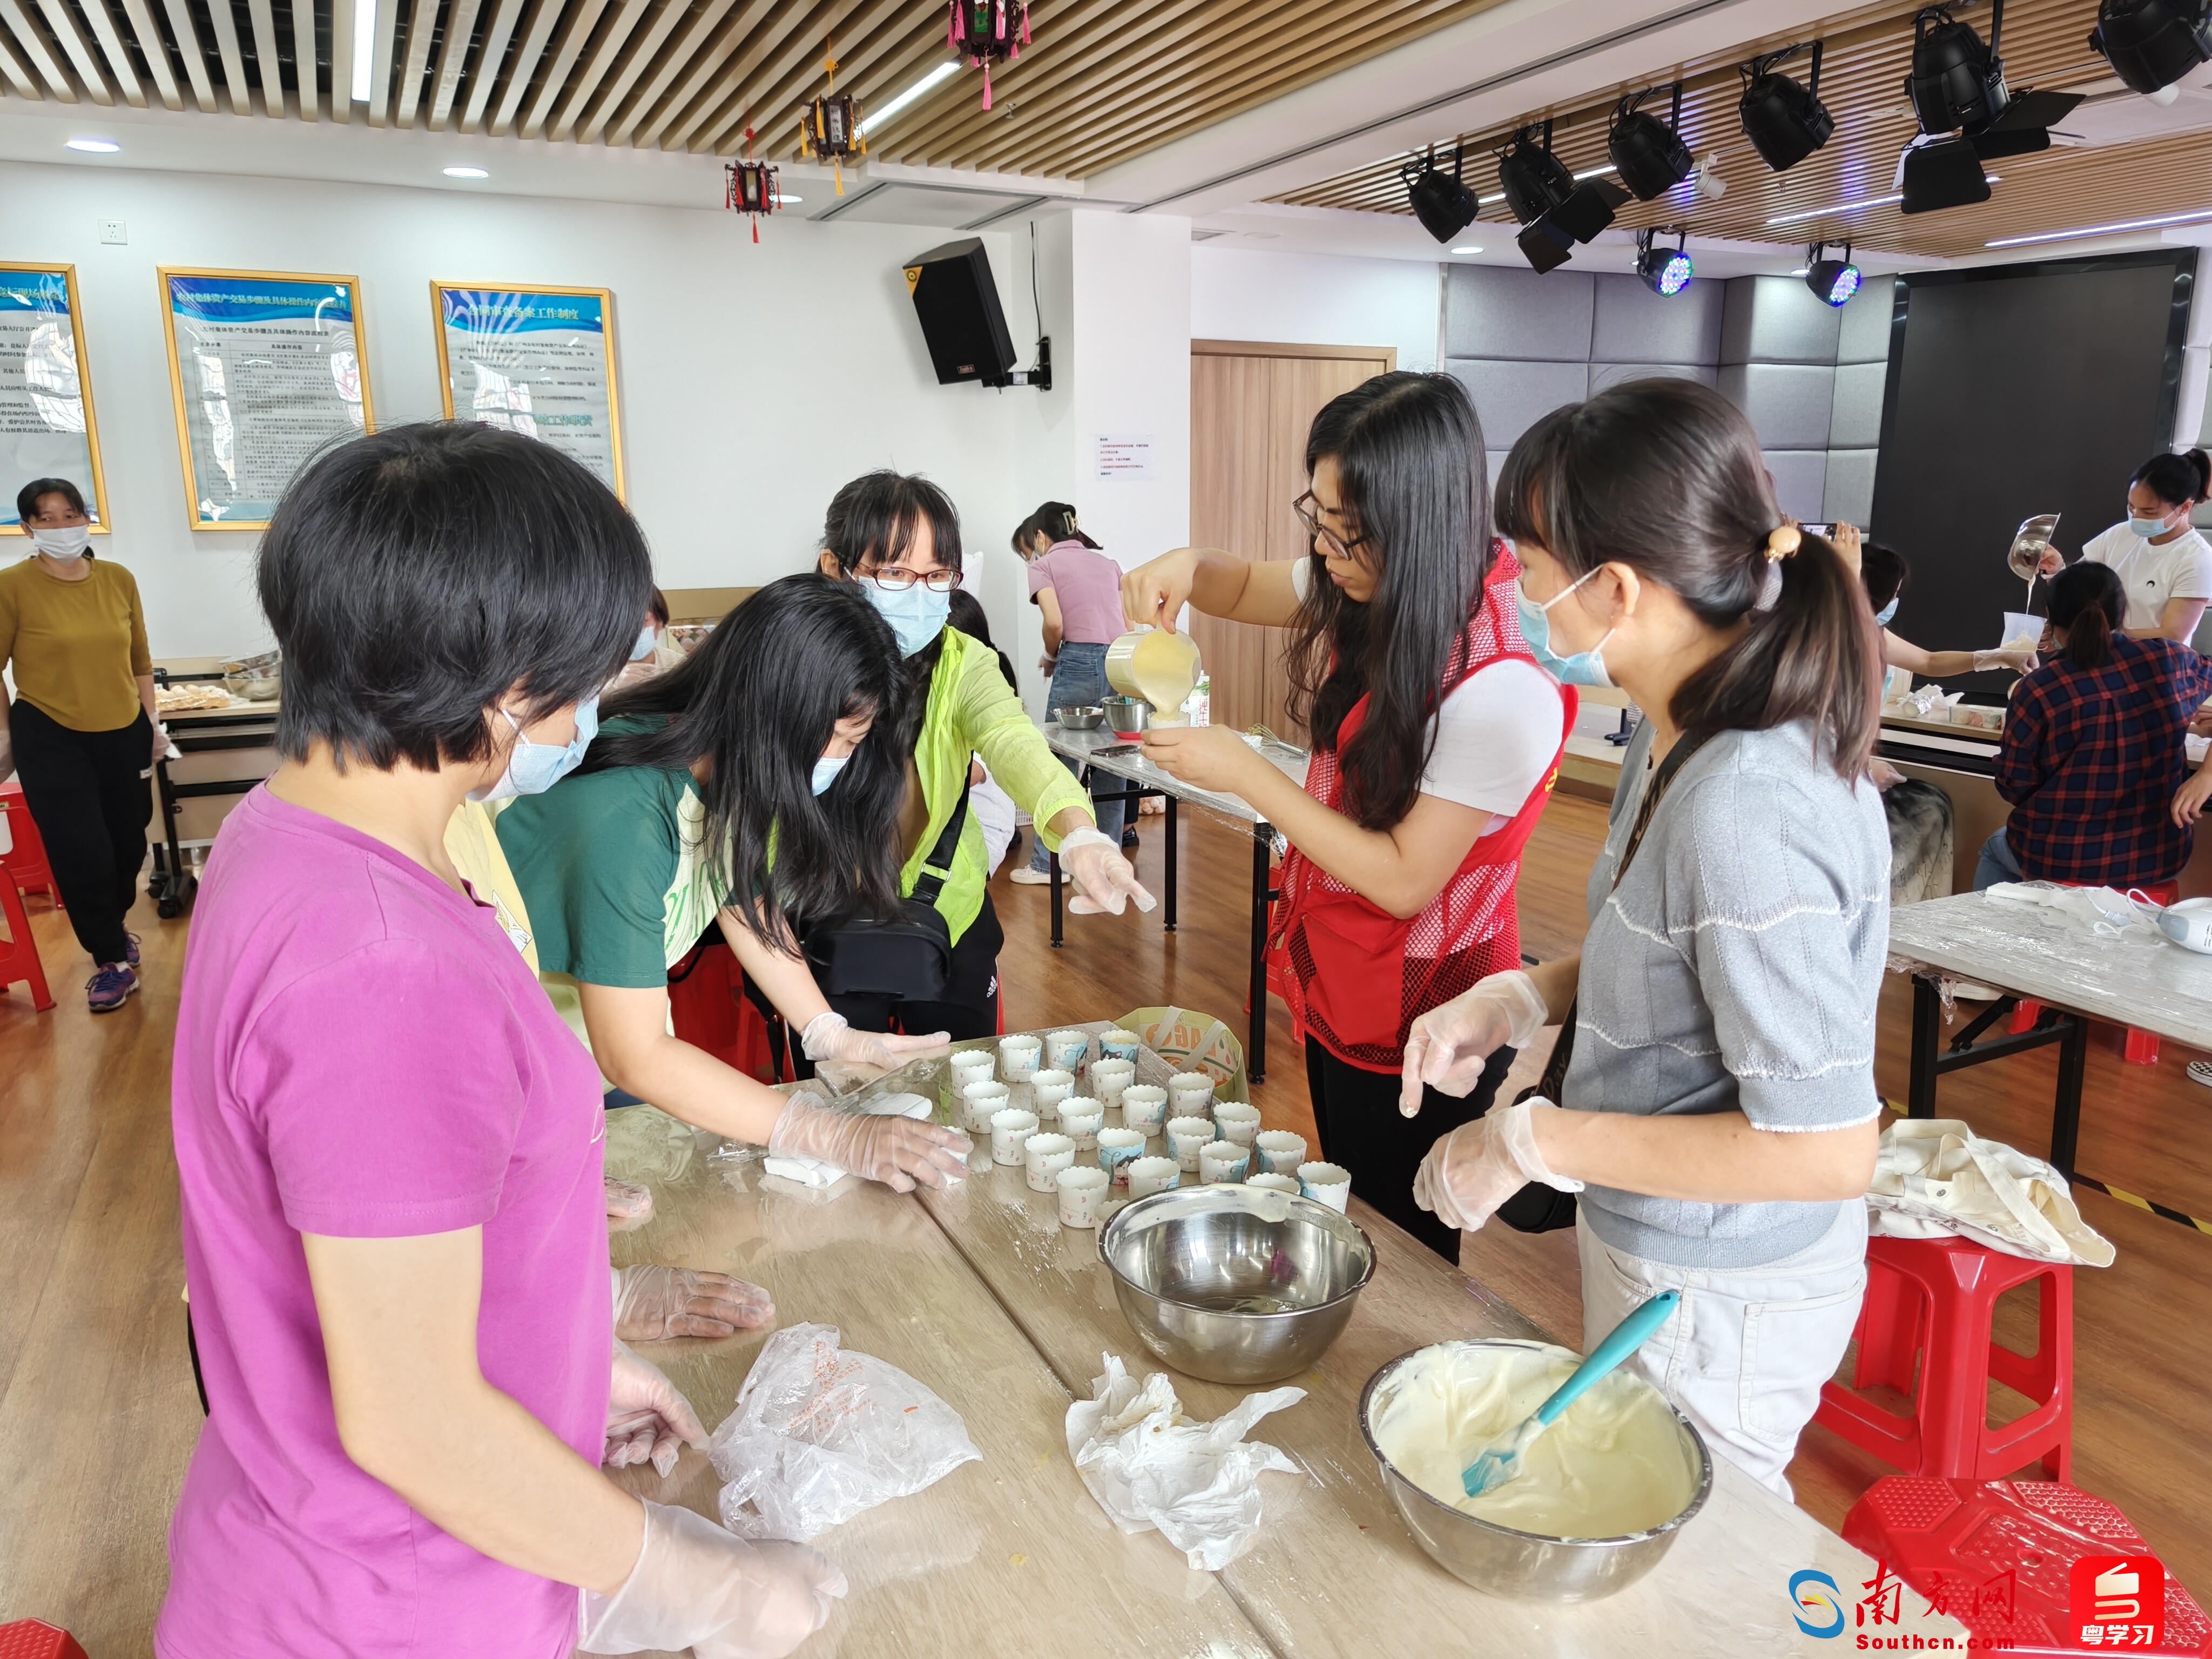 架起就业便民桥 广州市白云湖街举办公益技能培训进社区活动